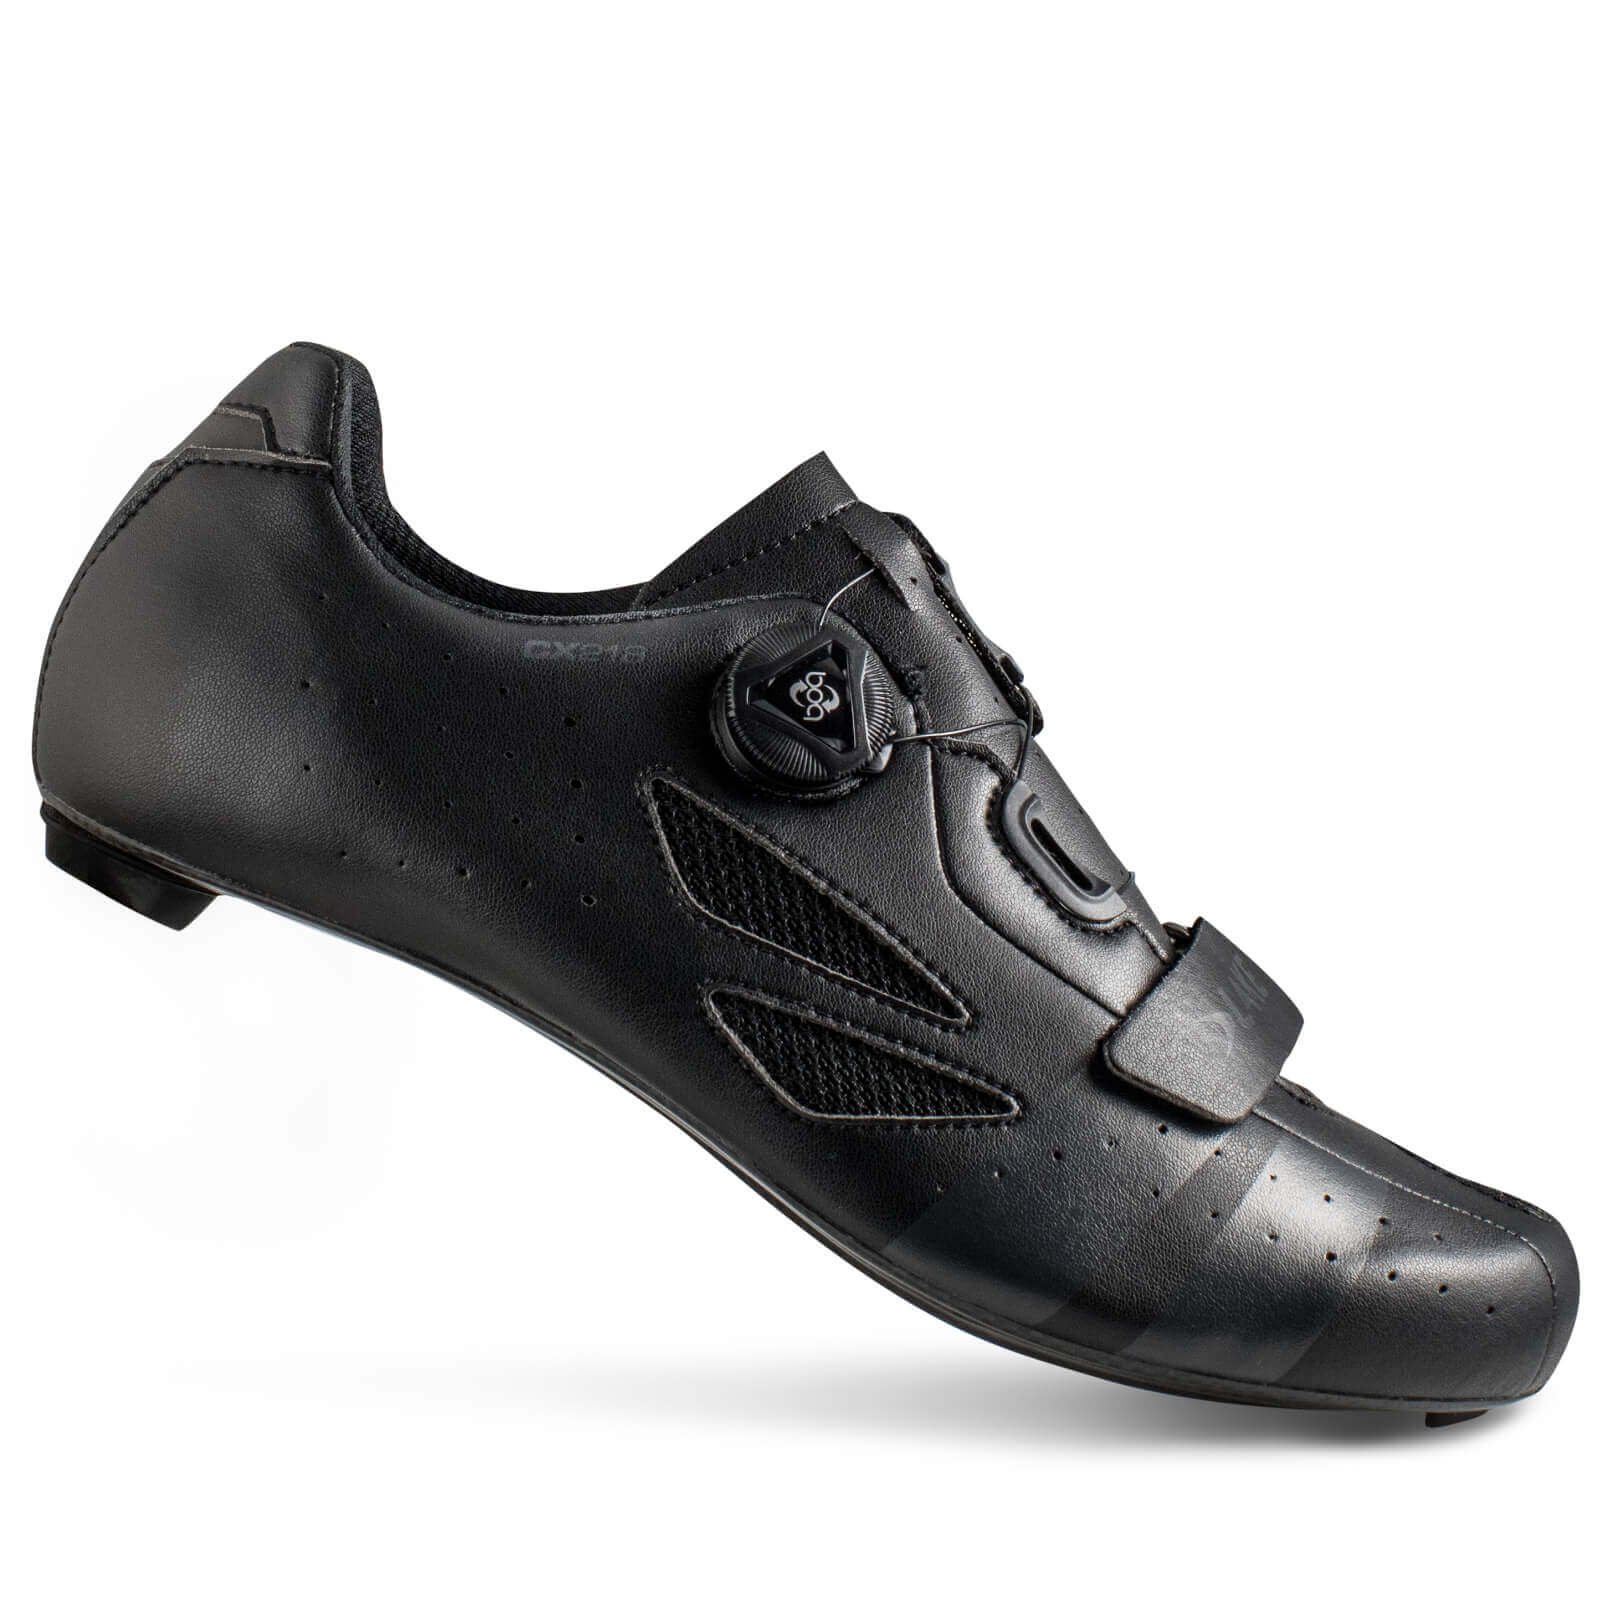 Lake CX218 Carbon Road Shoes - EU 43.5 - Black/Grey